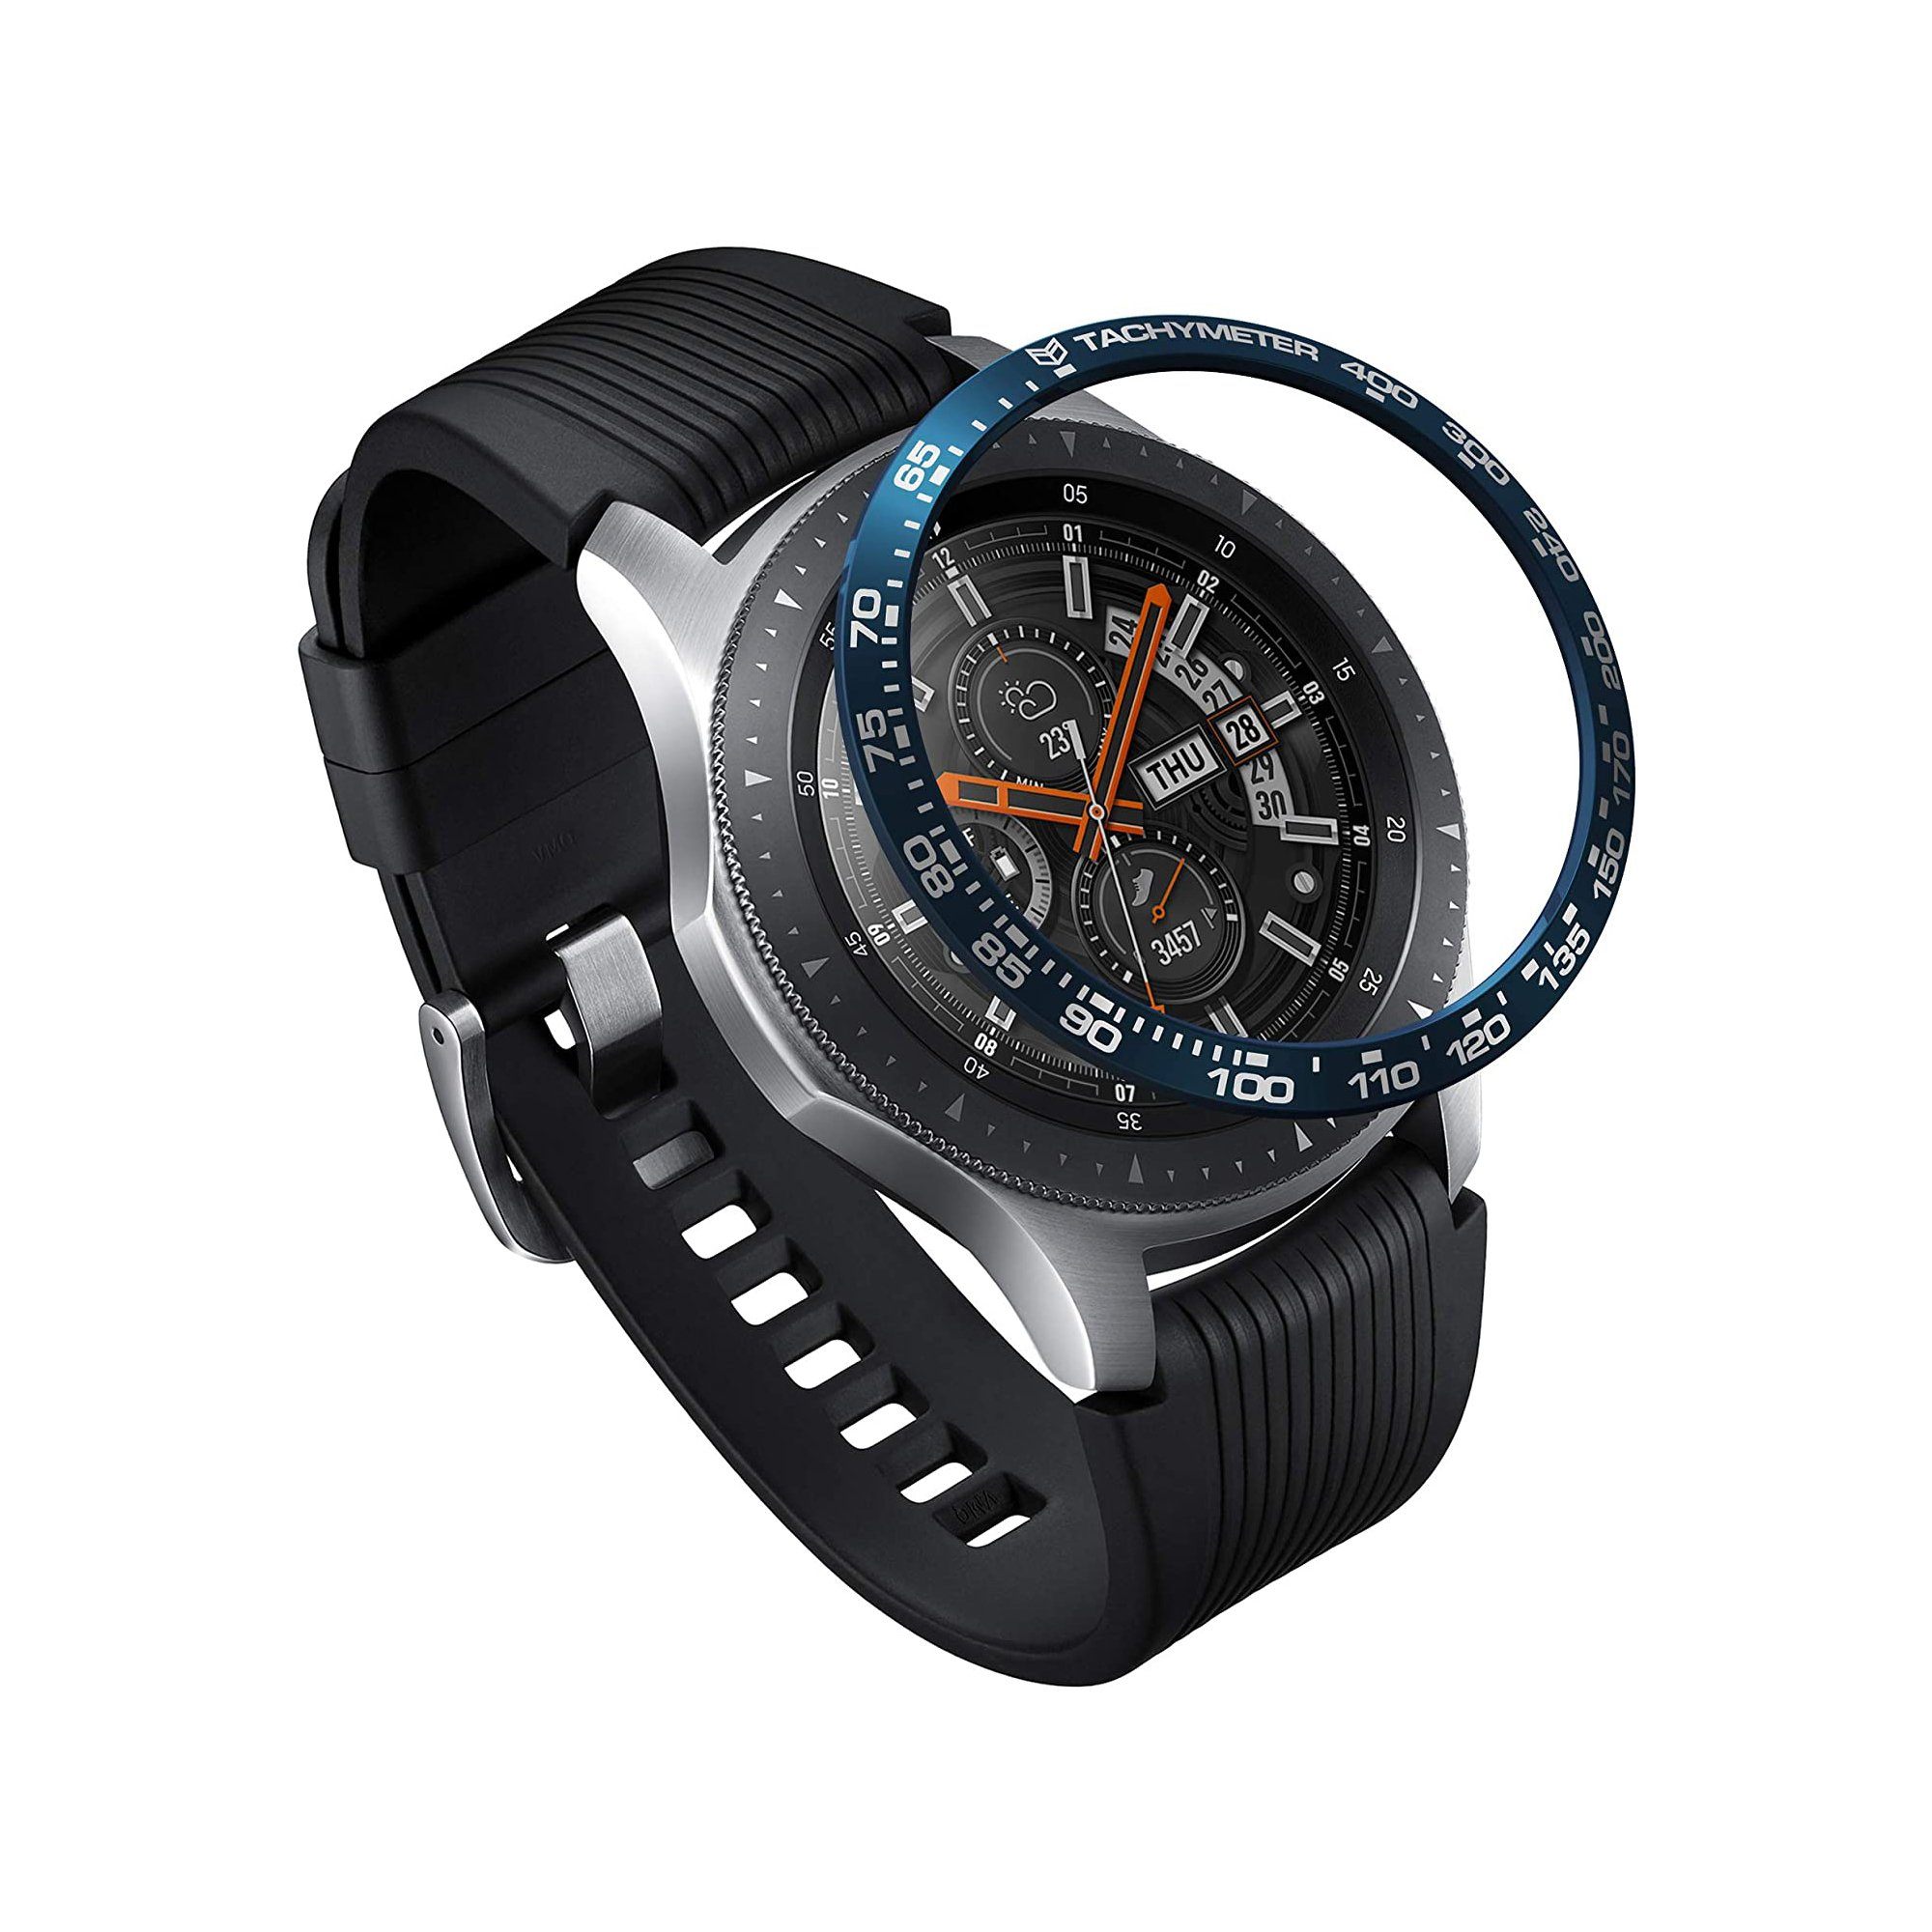 Ringke BEZEL STYLING for Galaxy Watch 46mm/Gear S3, Stainless Steel/Aluminum